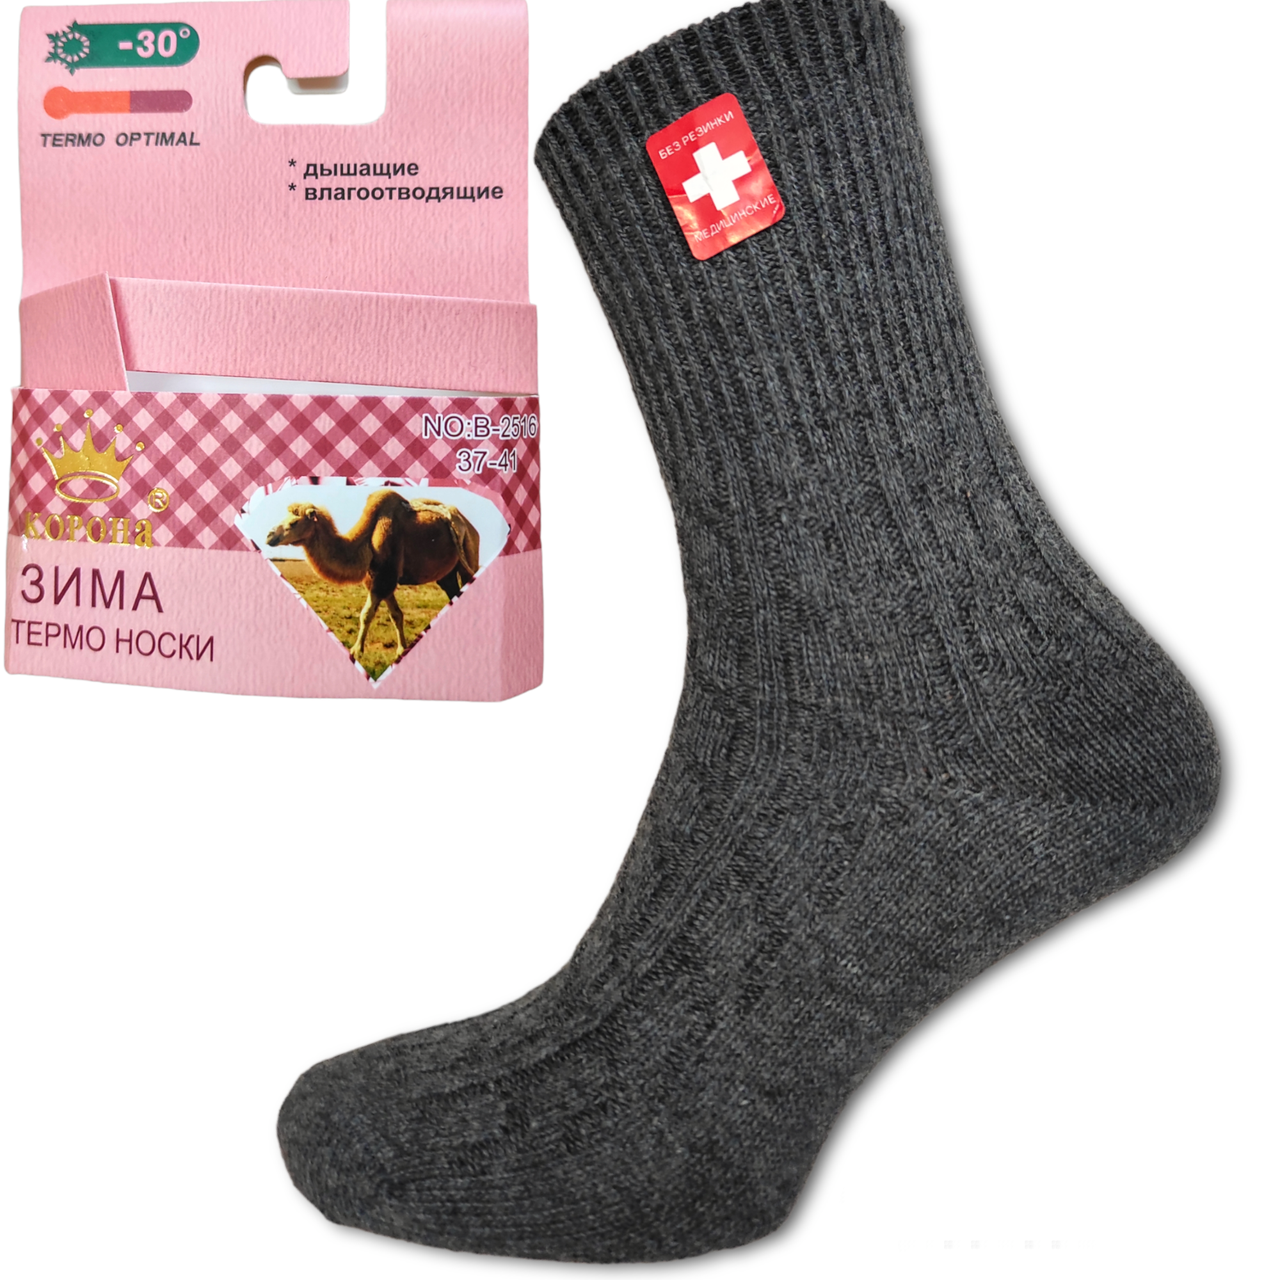 Шкарпетки жіночі теплі медичні верблюжа вовна 37-41 попелястий